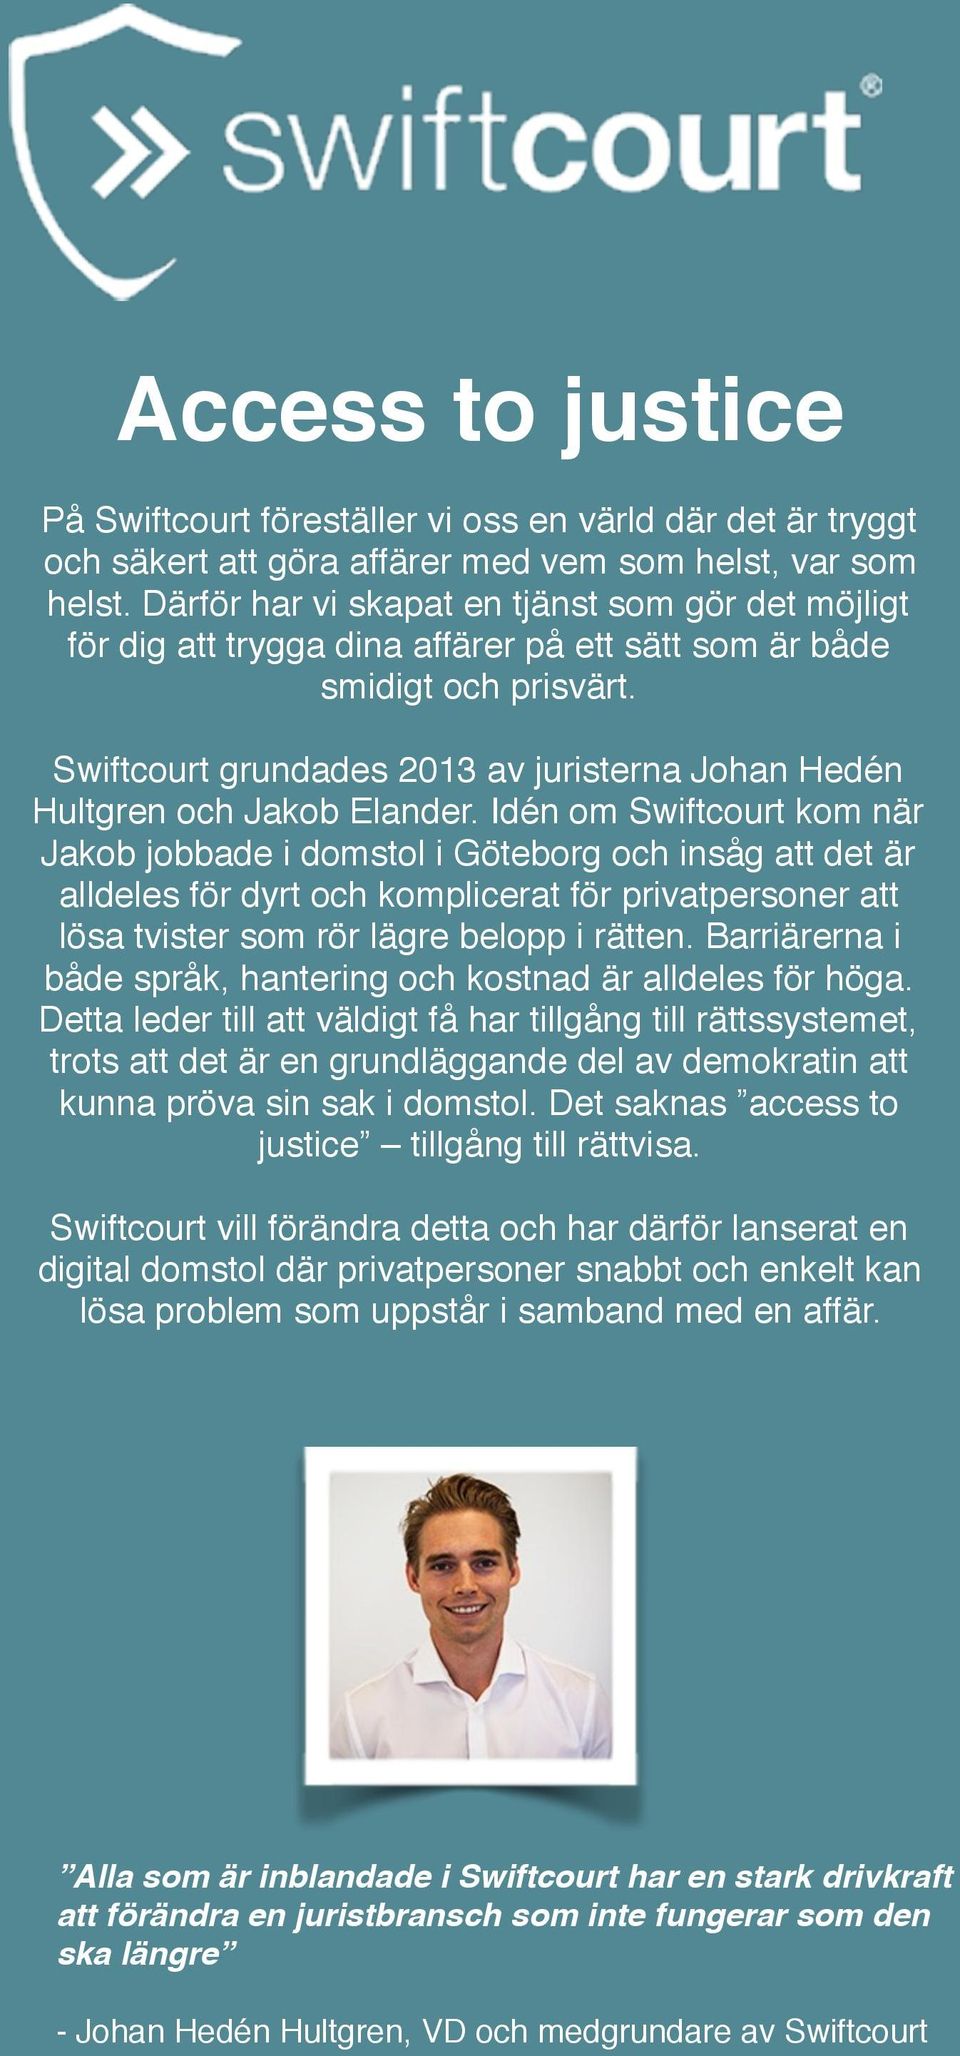 Swiftcourt grundades 2013 av juristerna Johan Hedén Hultgren och Jakob Elander.